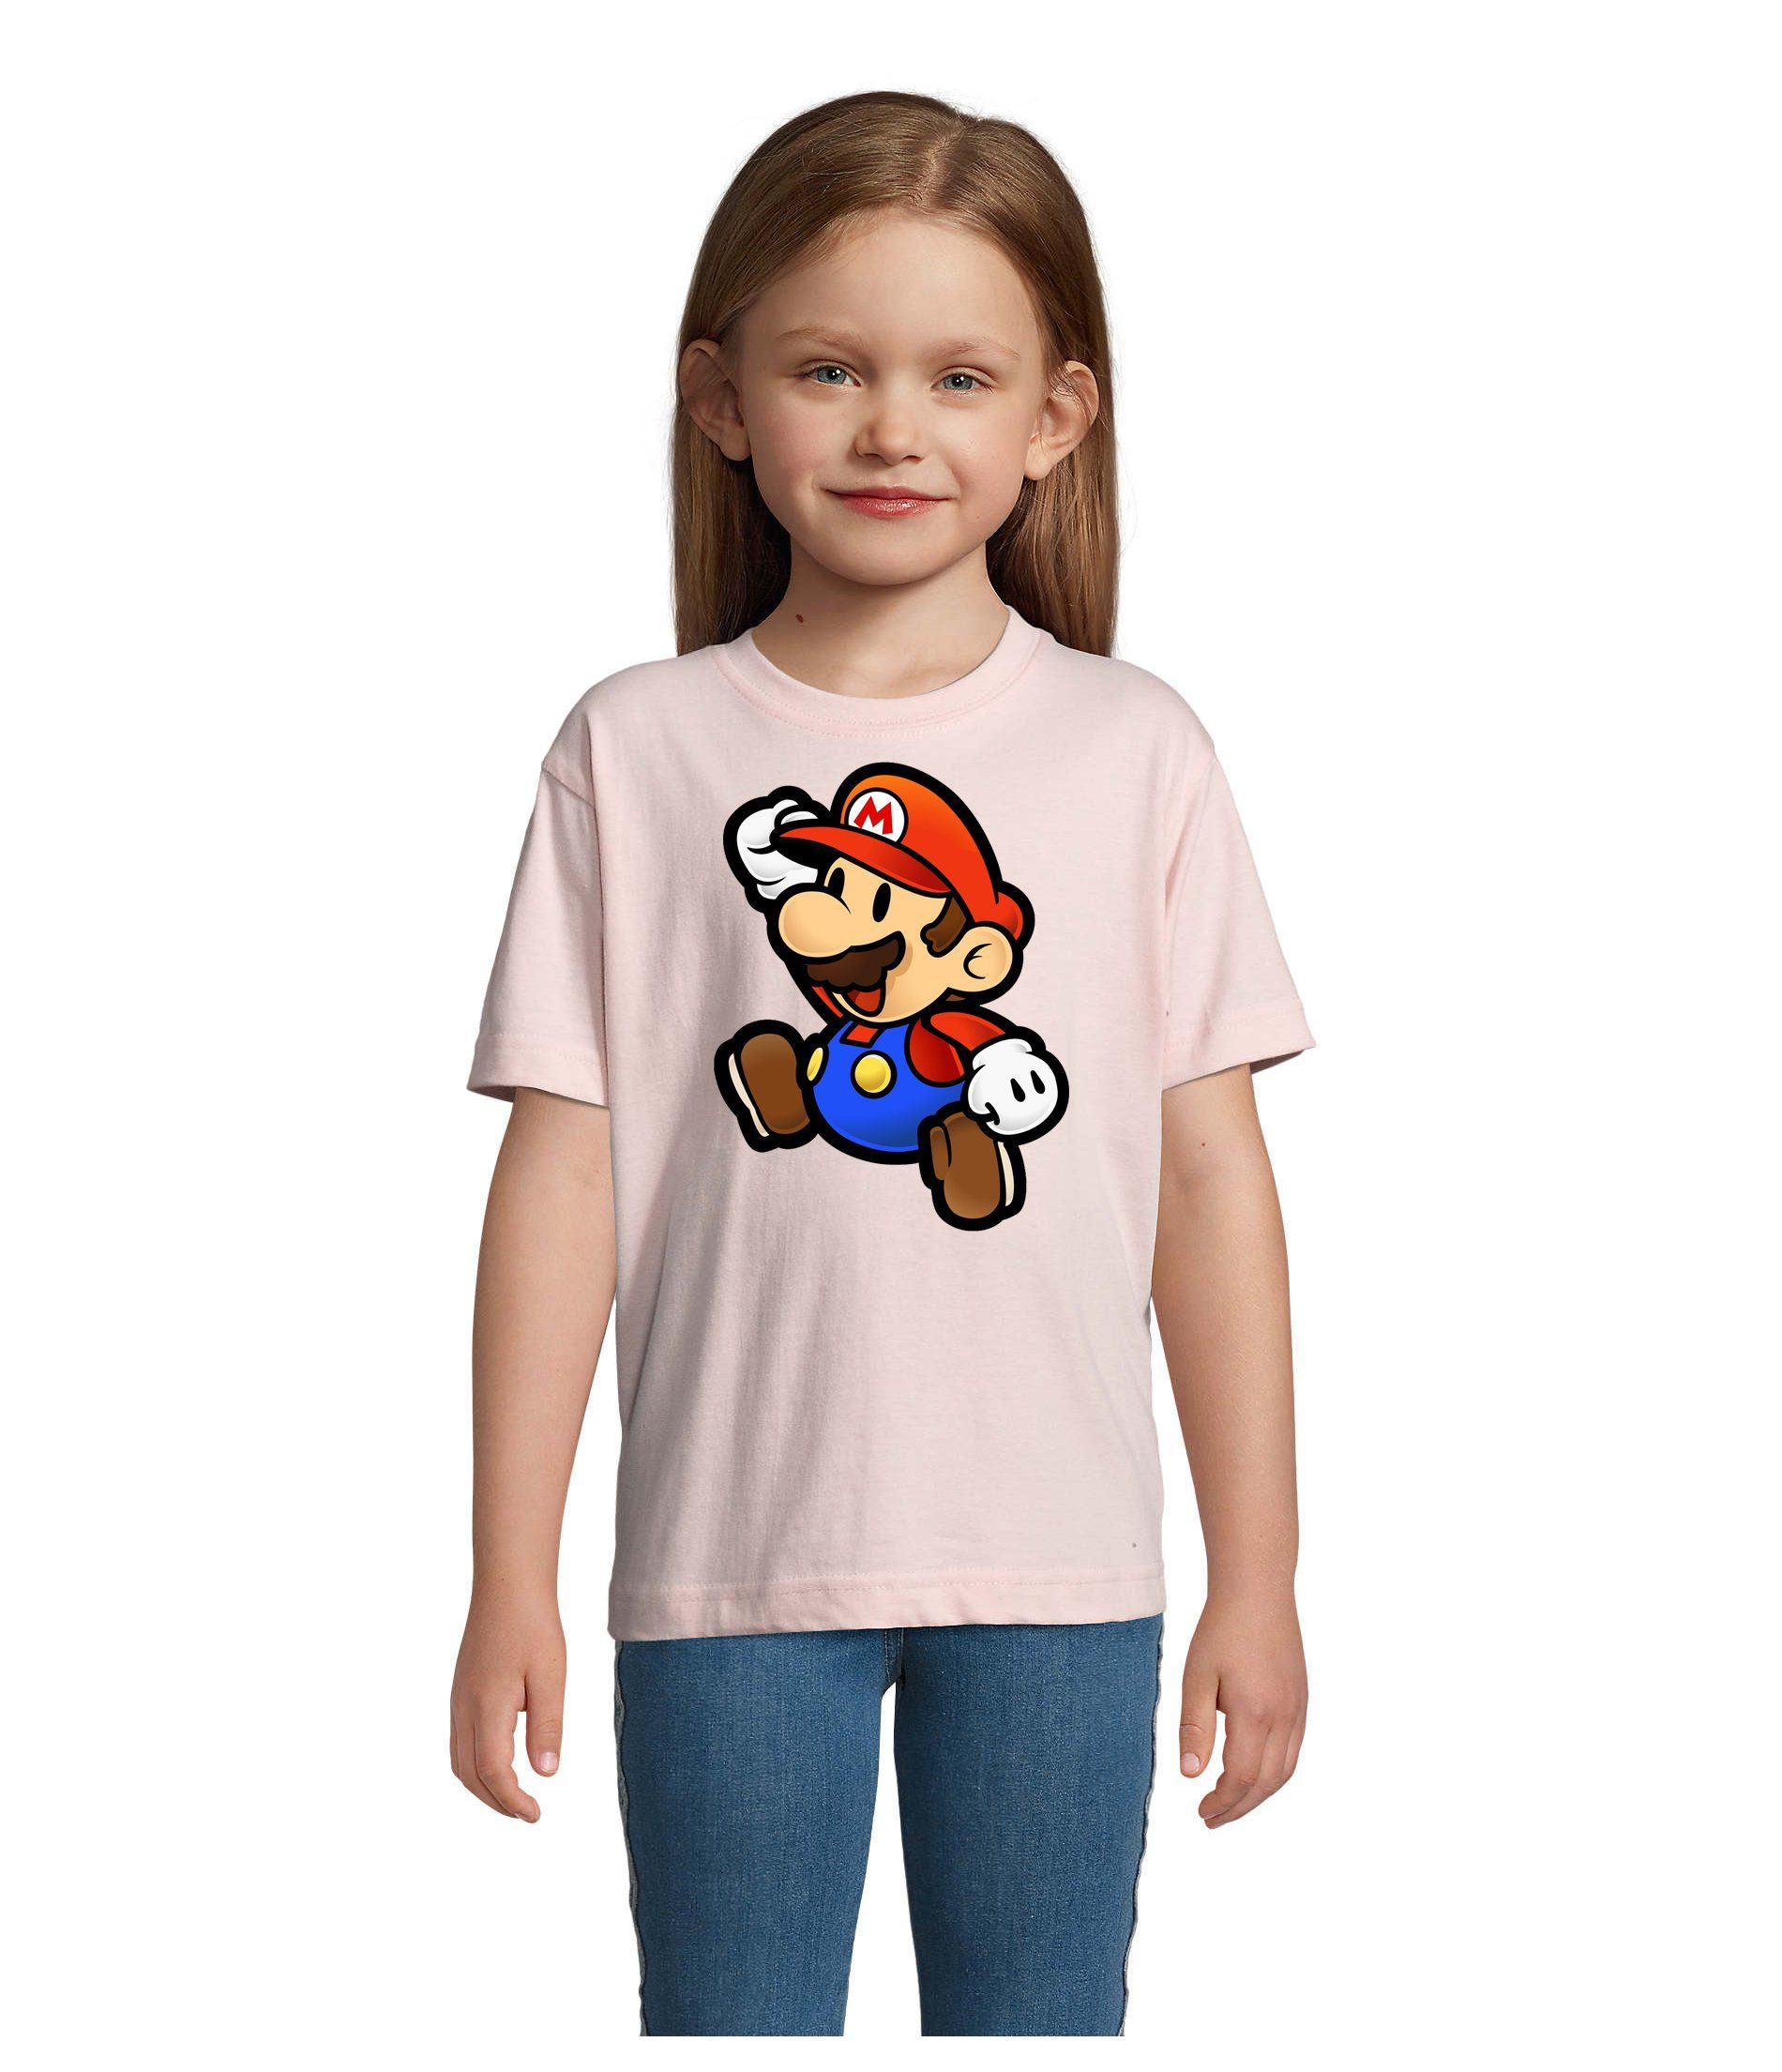 Blondie & Brownie T-Shirt Kinder Jungen & Mädchen Mario Nintendo Gaming Luigi Yoshi Super in vielen Farben Rosa